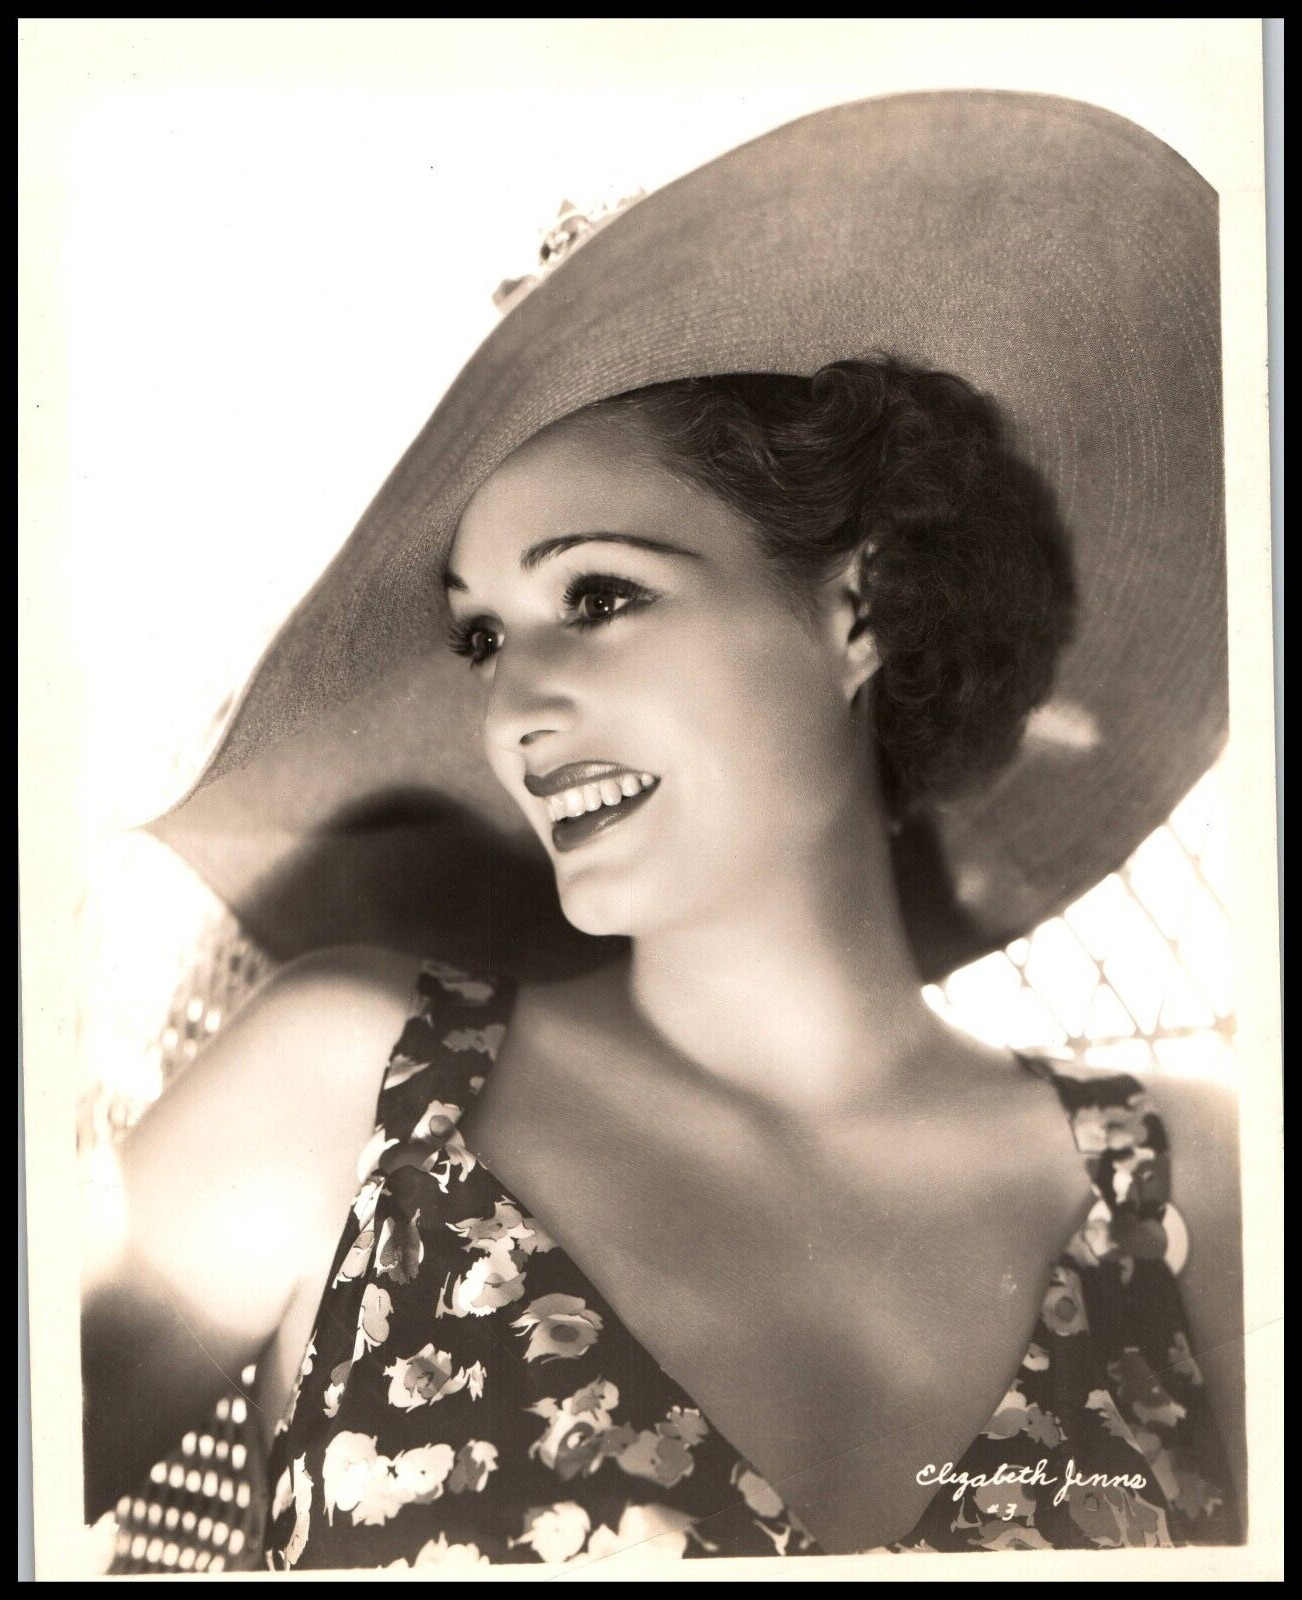 Hollywood Beauty ELIZABETH JENNS STYLISH POSE 1930s STUNNING PORTRAIT Photo 654